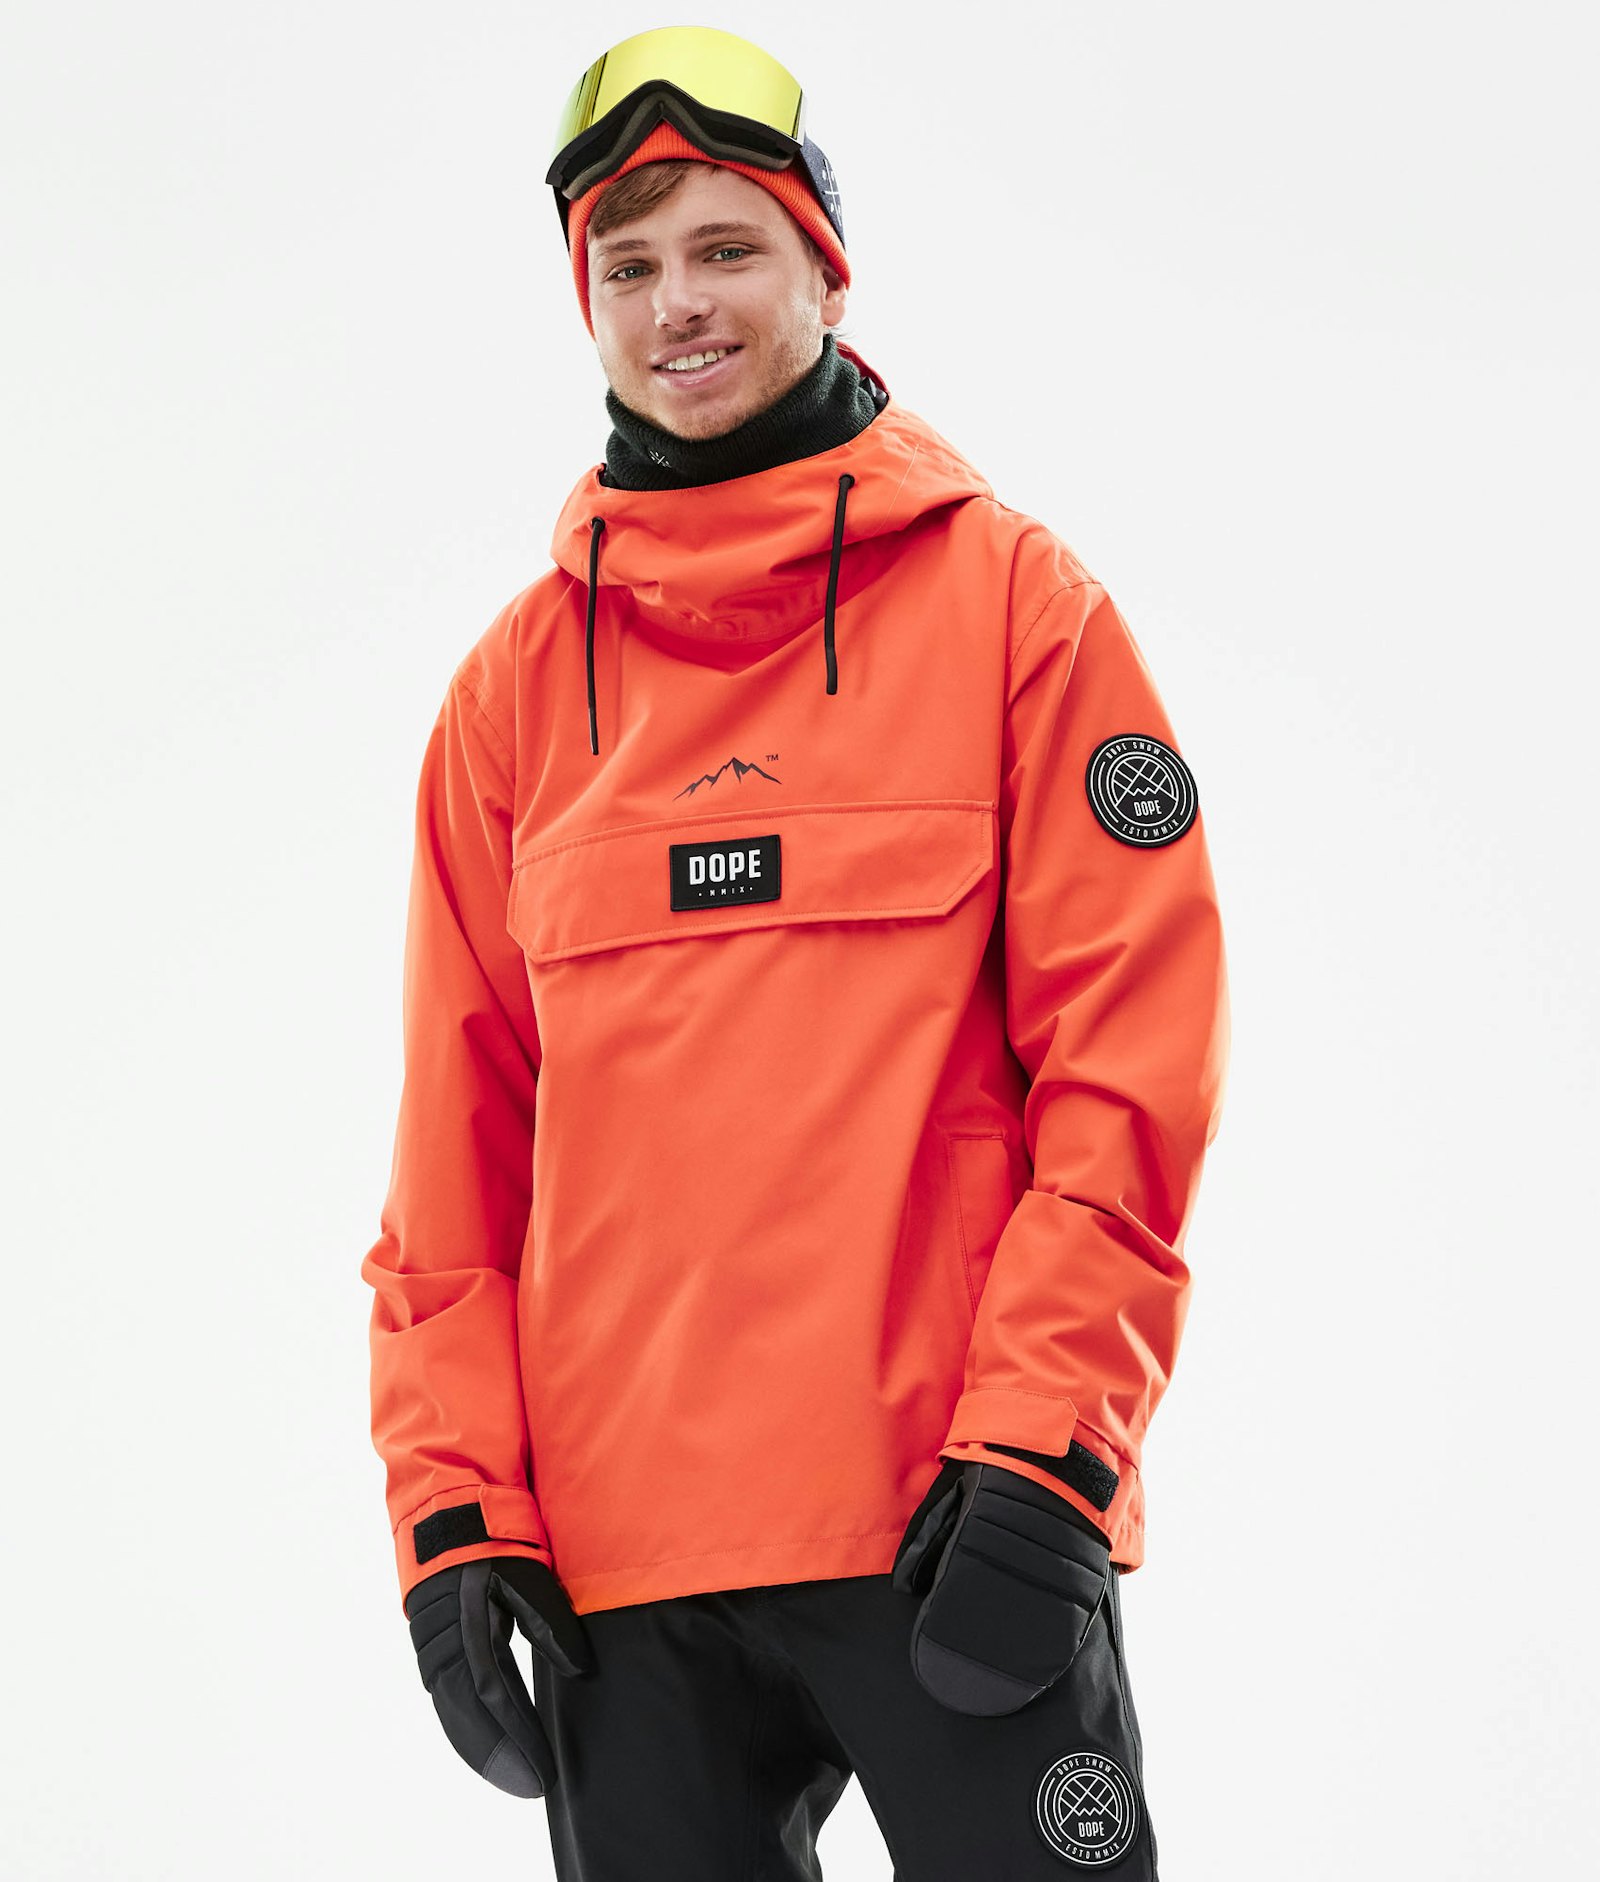 Dope Blizzard 2021 Snowboard Jacket Men Orange